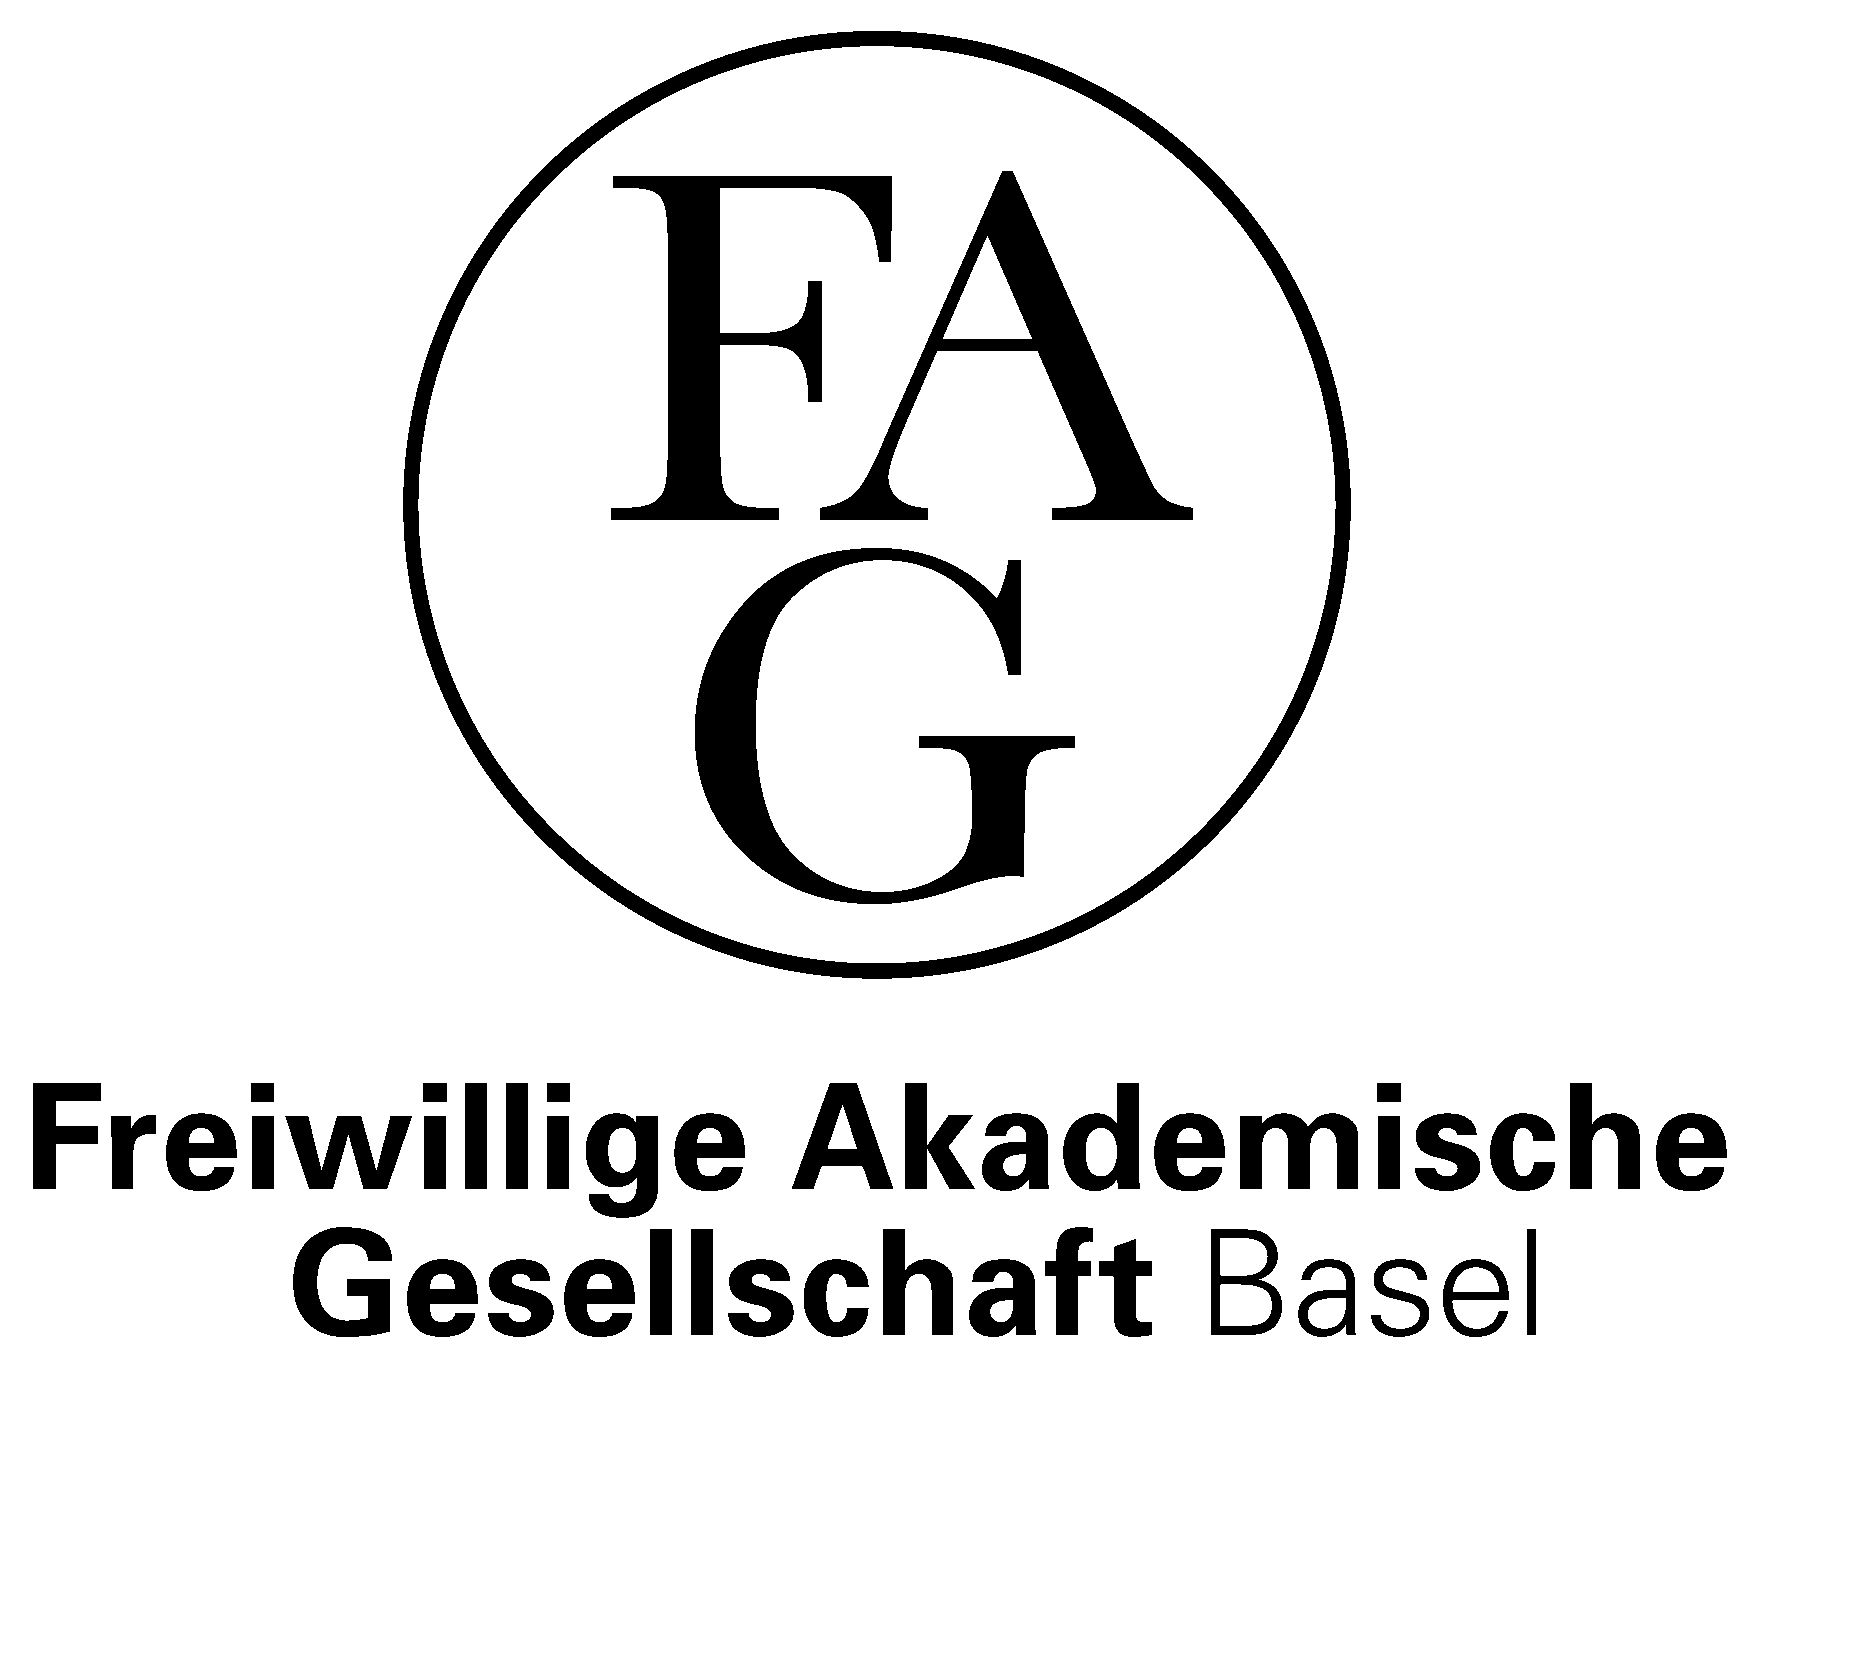 FAG Logo